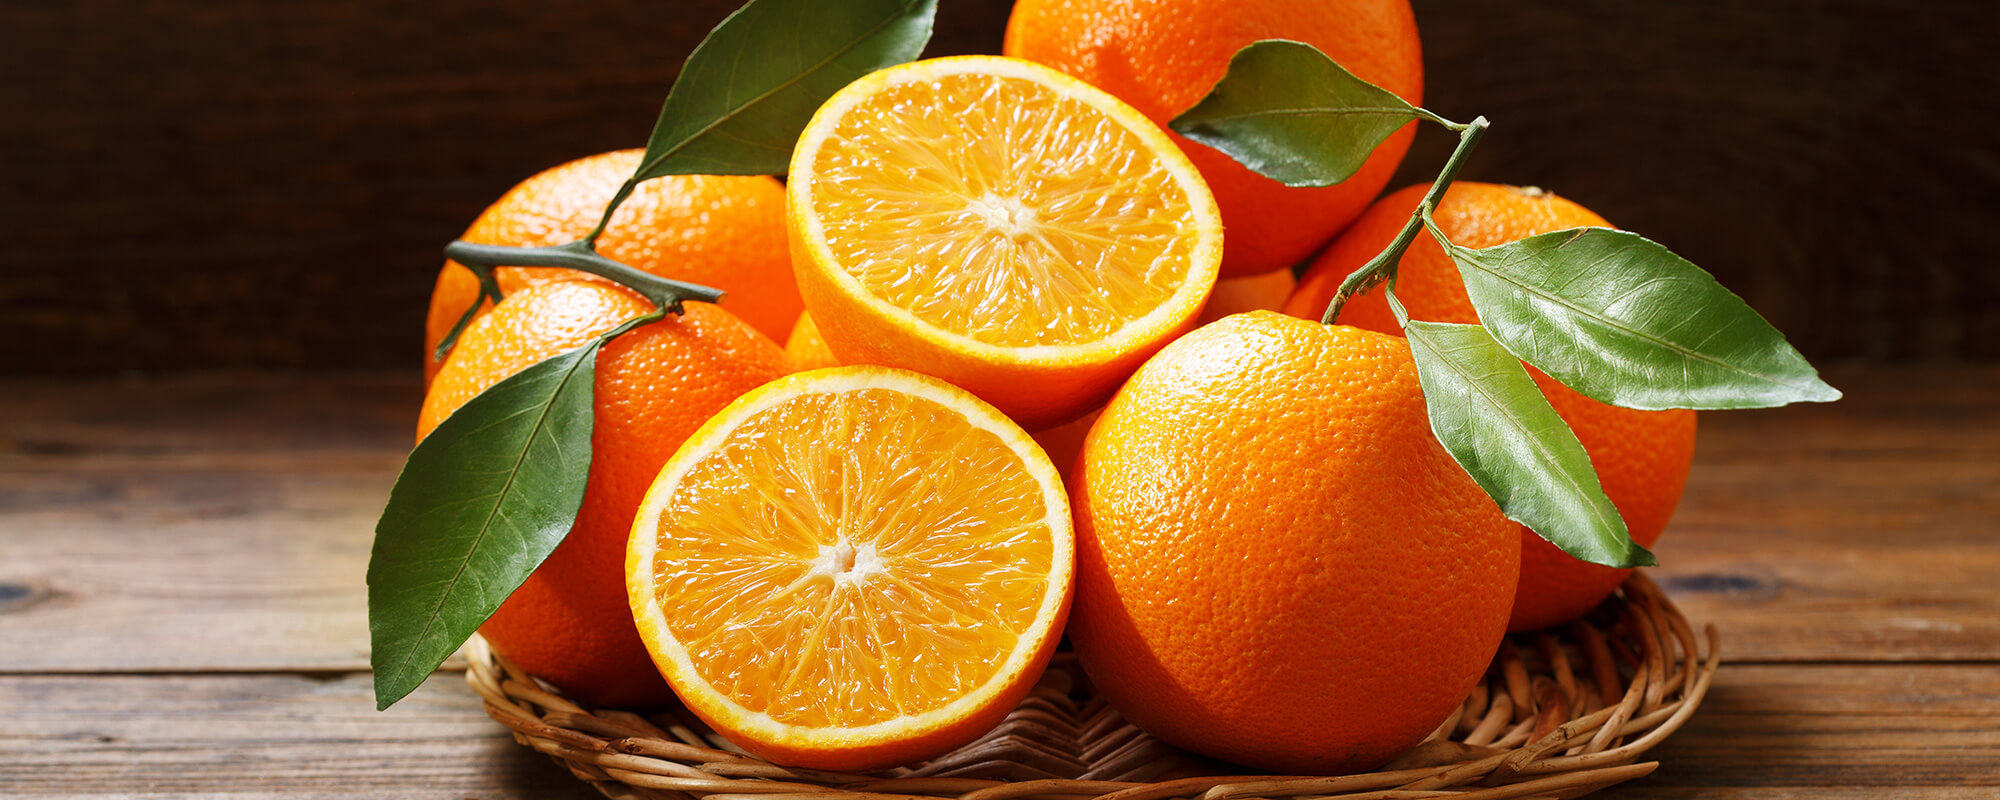 KüchenMarkt Obst und Gemüse Orangen